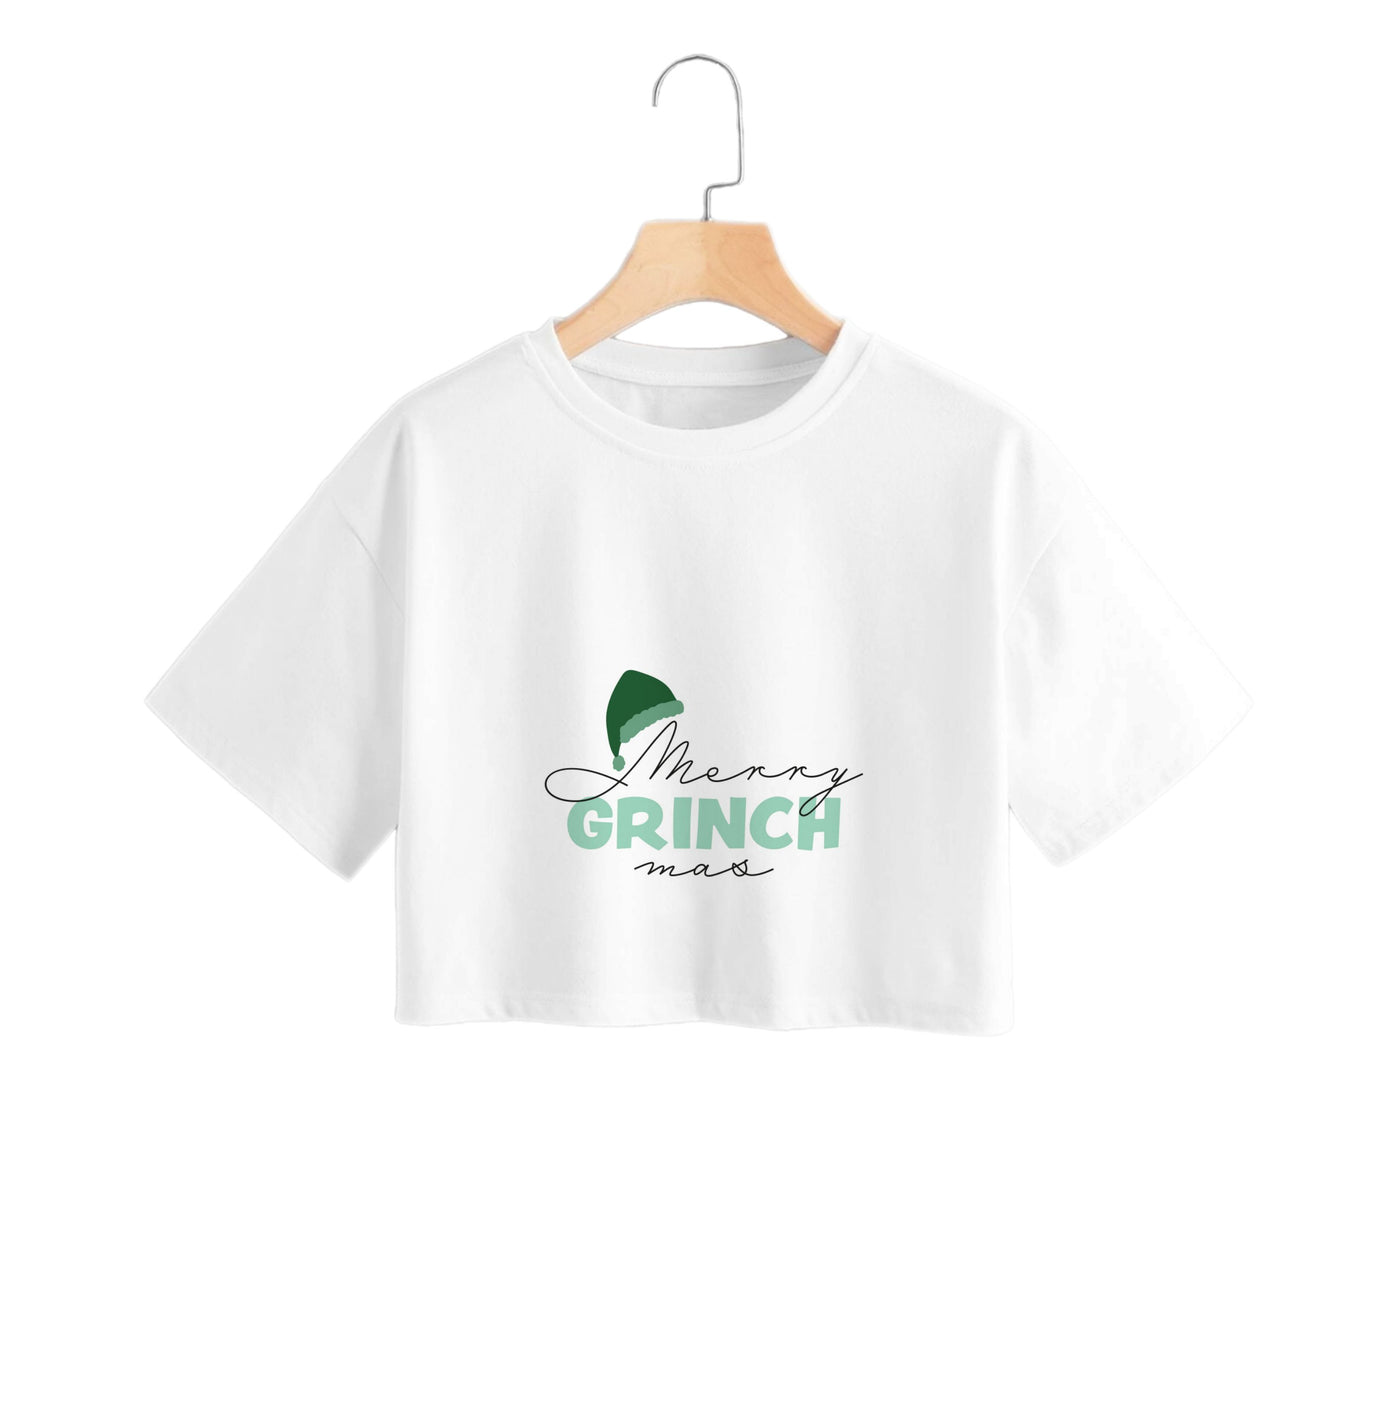 Merry Grinchmas - Grinch Crop Top